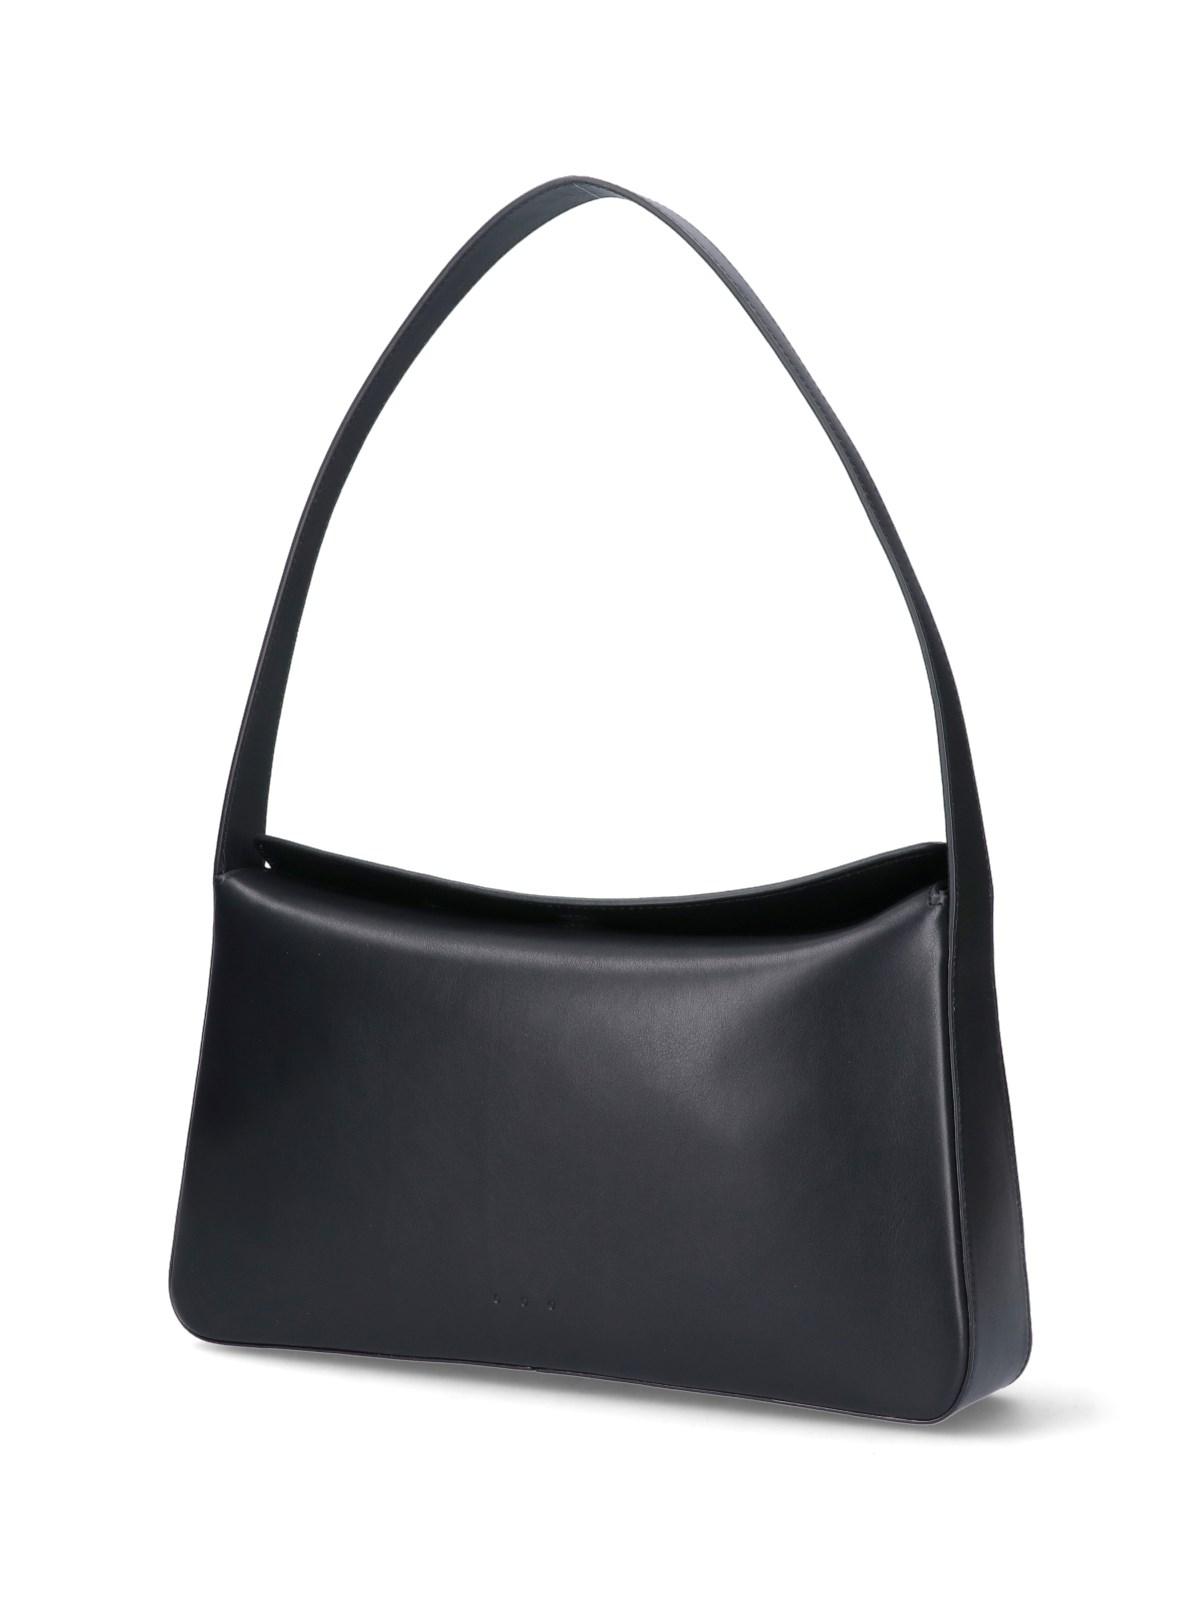 Buy AESTHER EKME Baguette Leather Shoulder Bag - Black At 40% Off